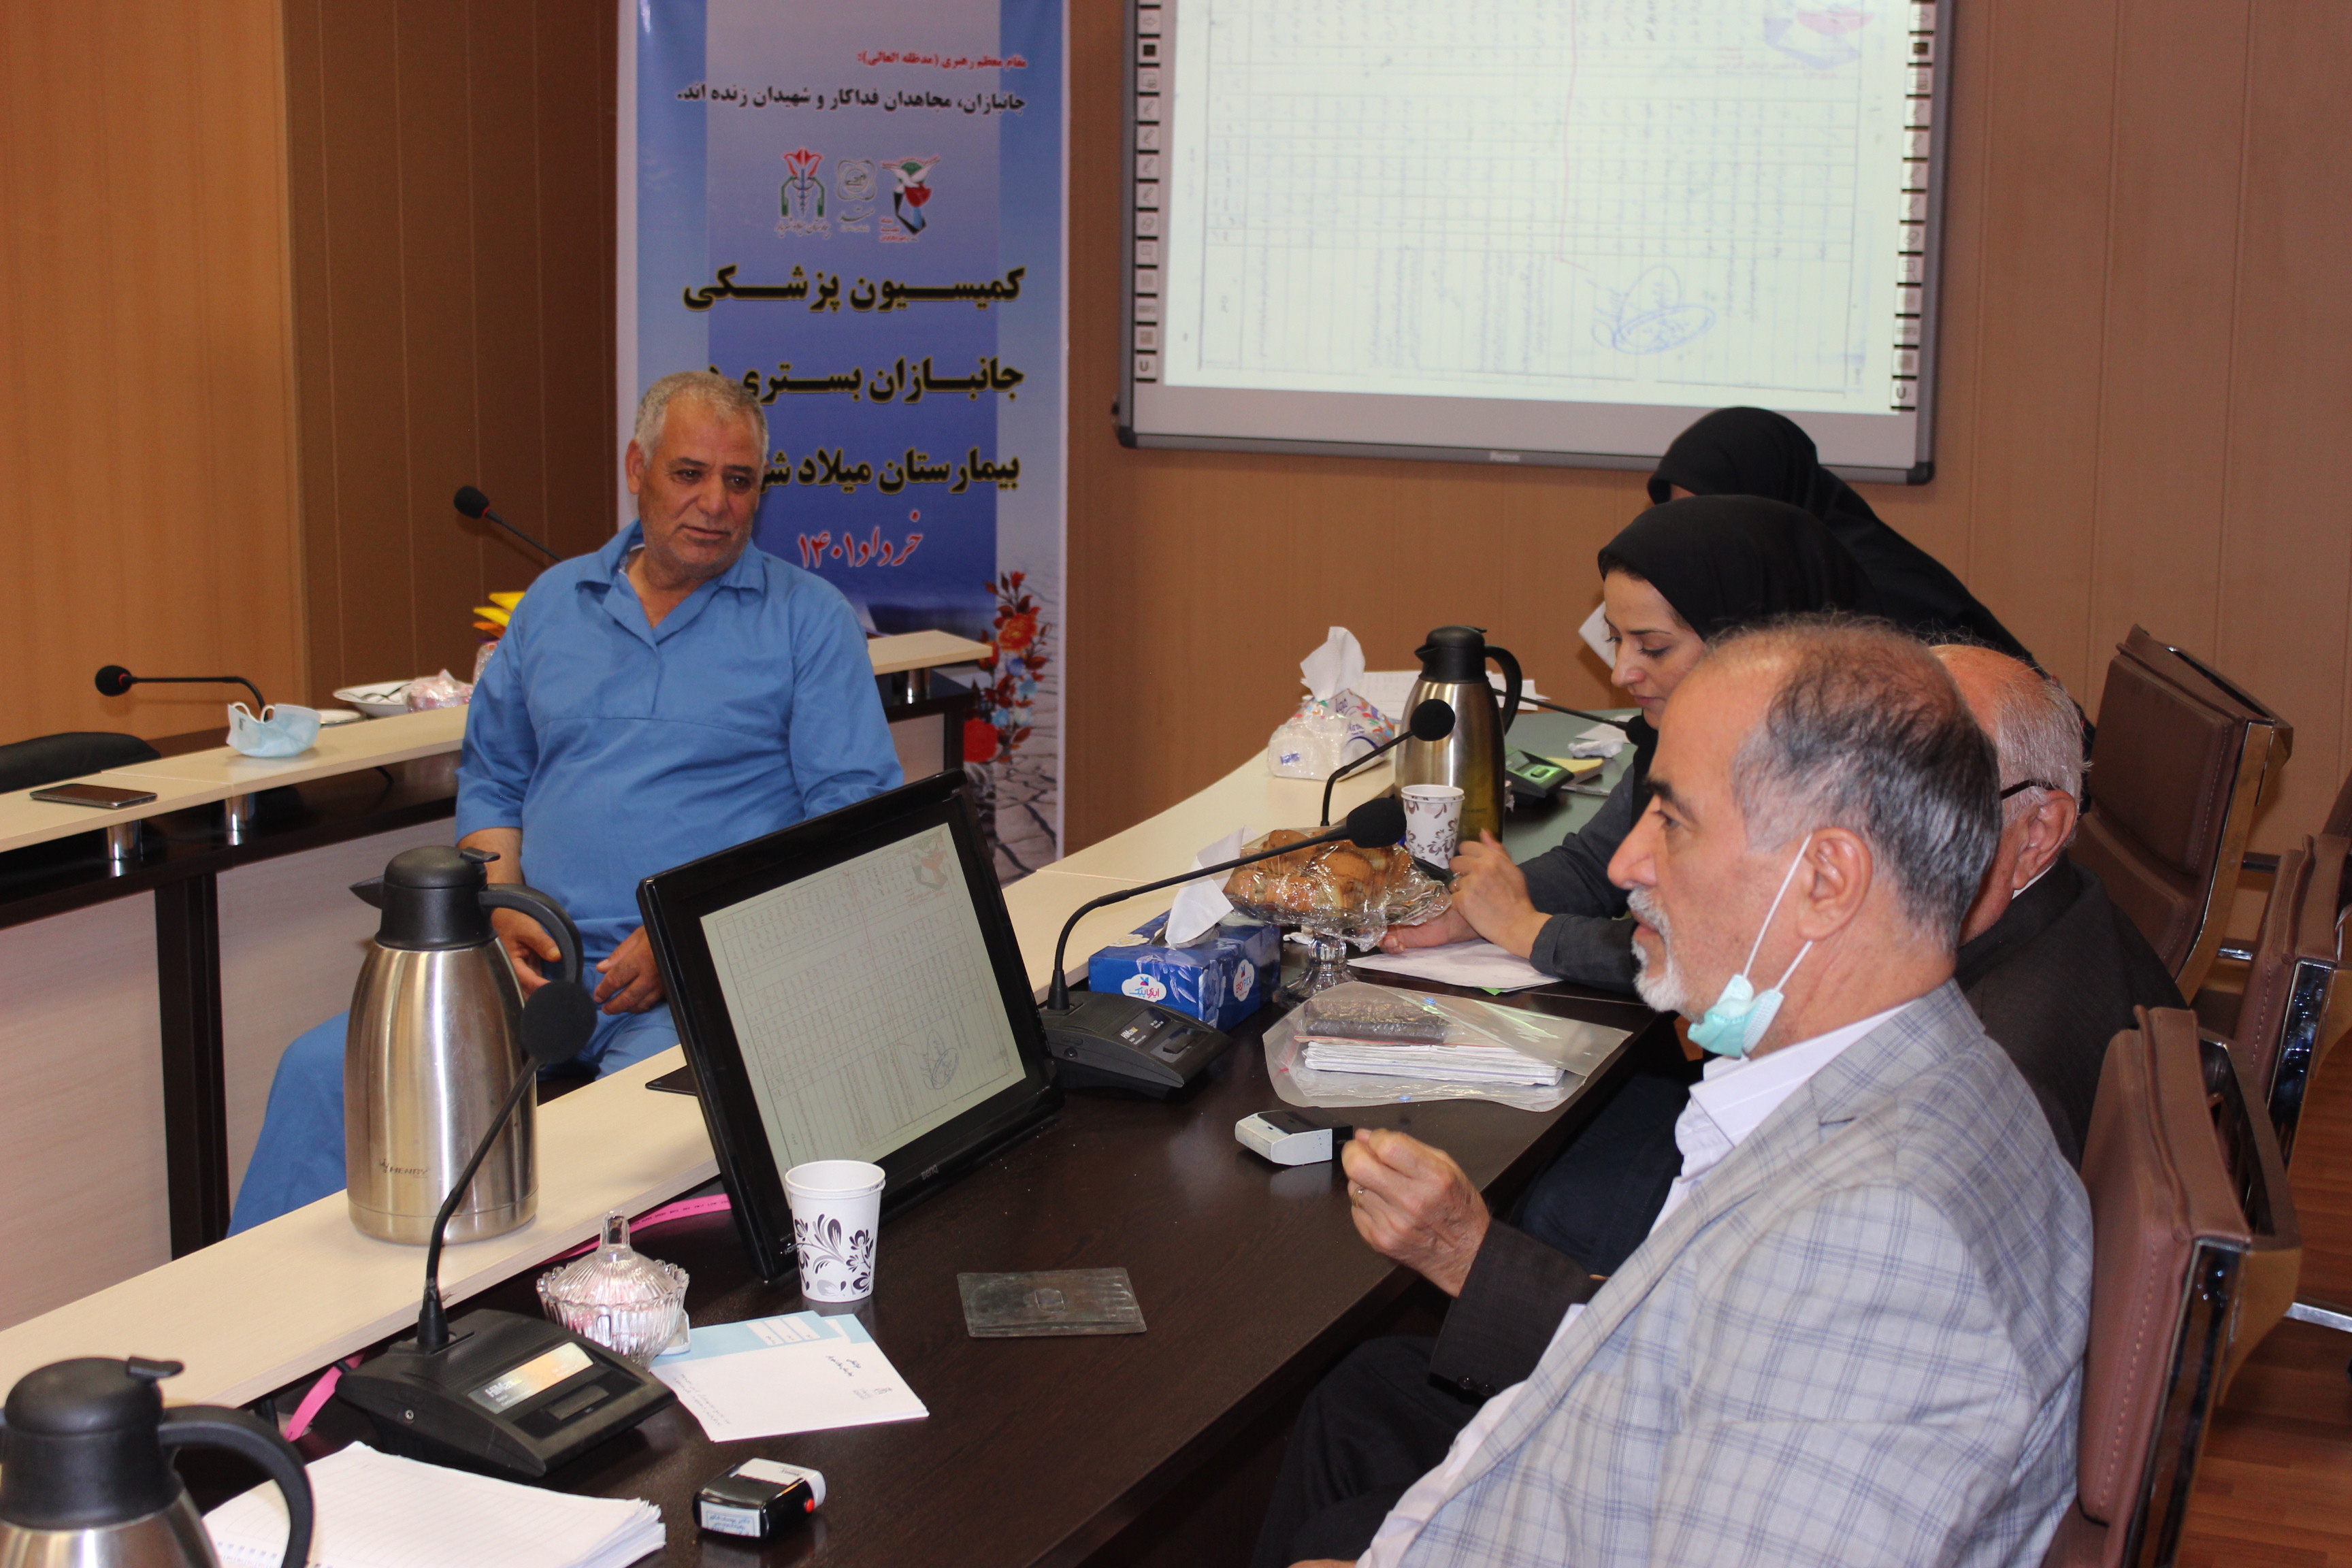 کمیسیون پزشکی ایثارگران بیمارستان میلاد شهریار، برای اولین بار در این مرکز برگزار شد